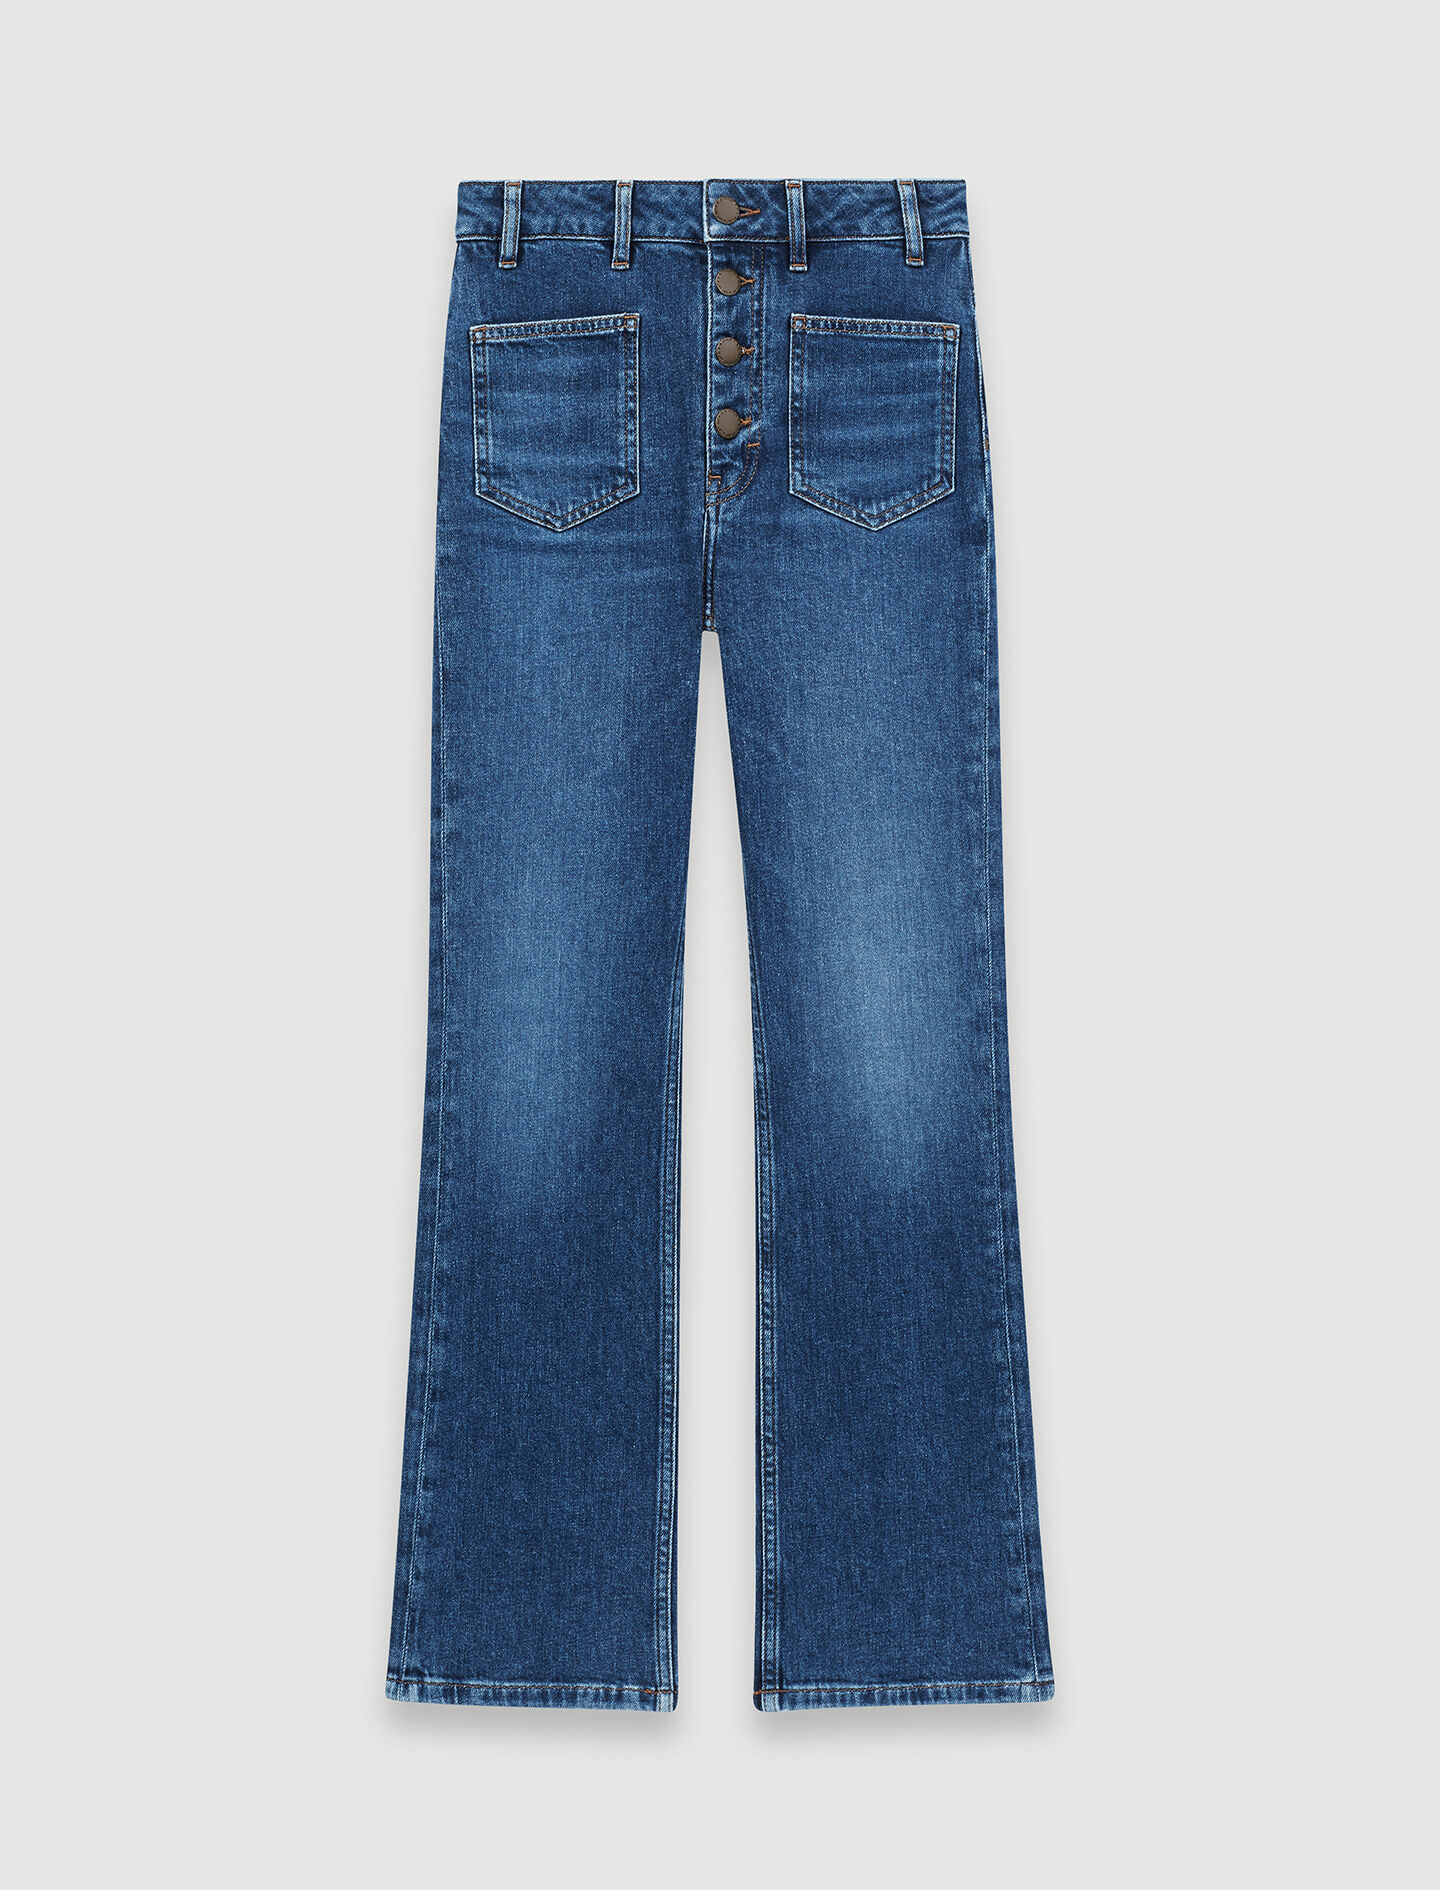 maje jeans sale